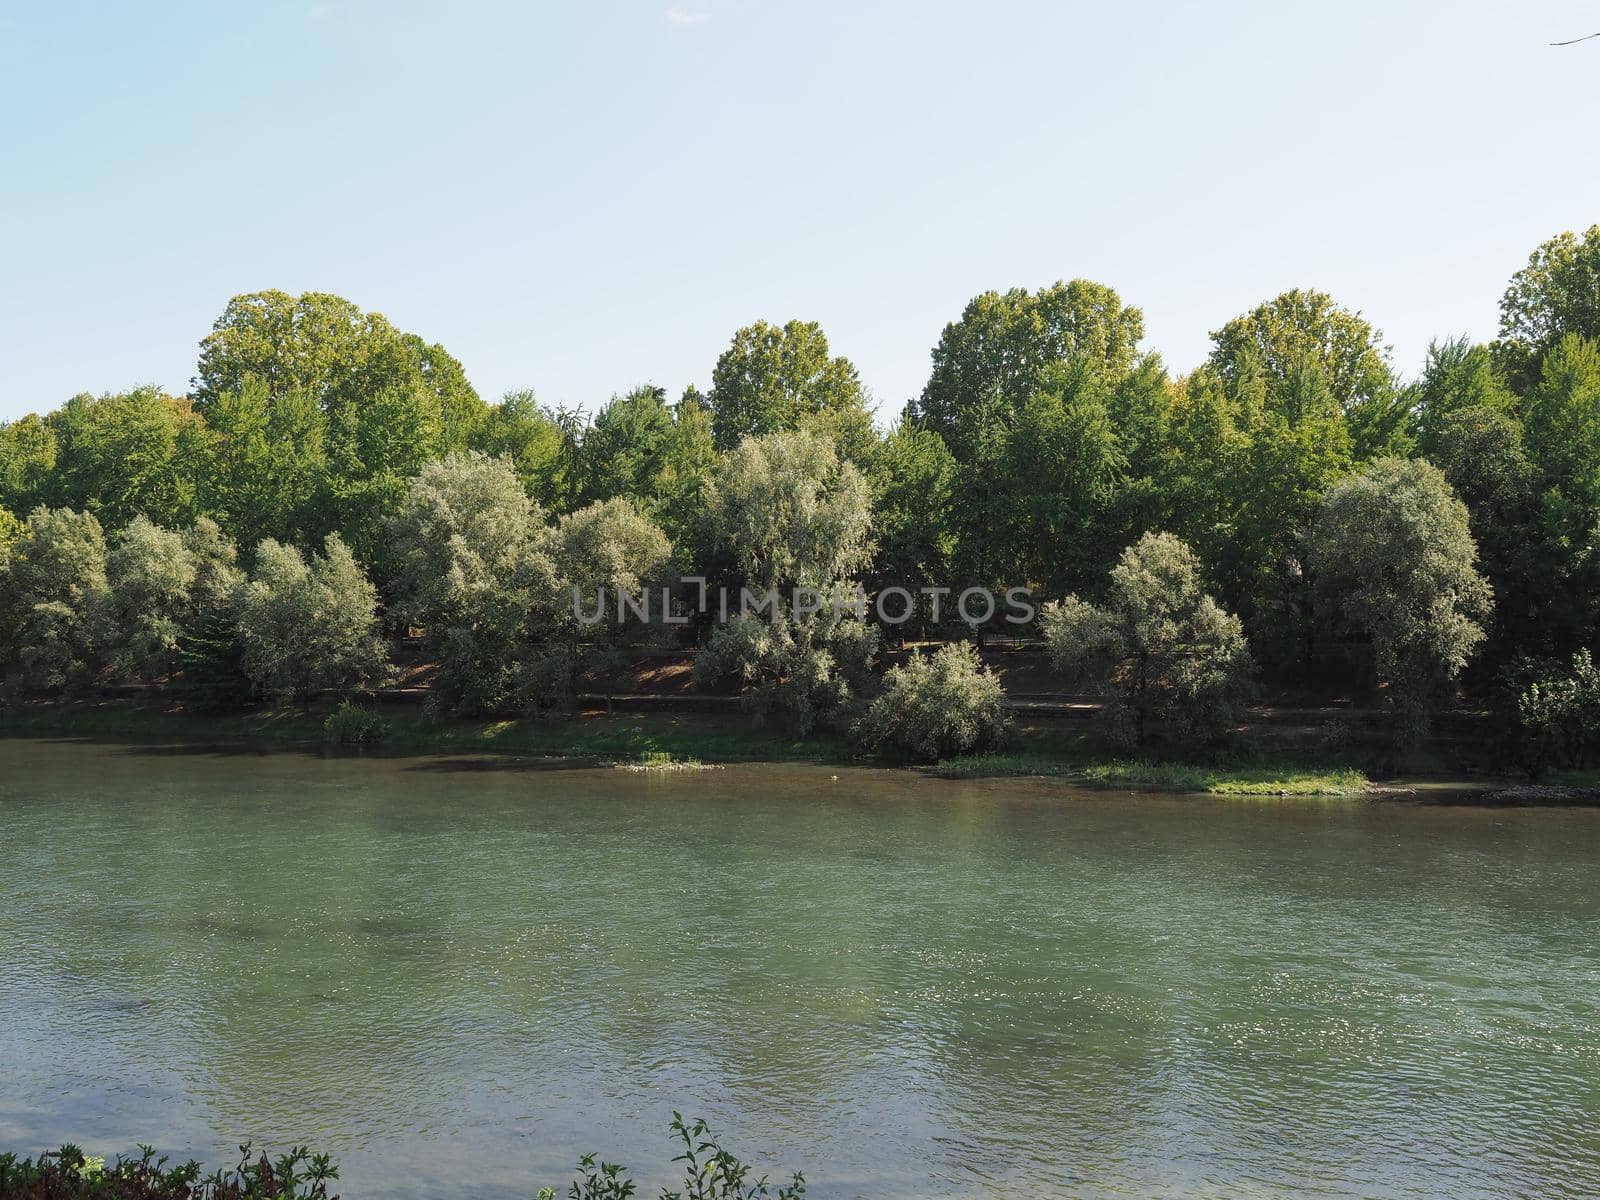 River Po in Turin by claudiodivizia